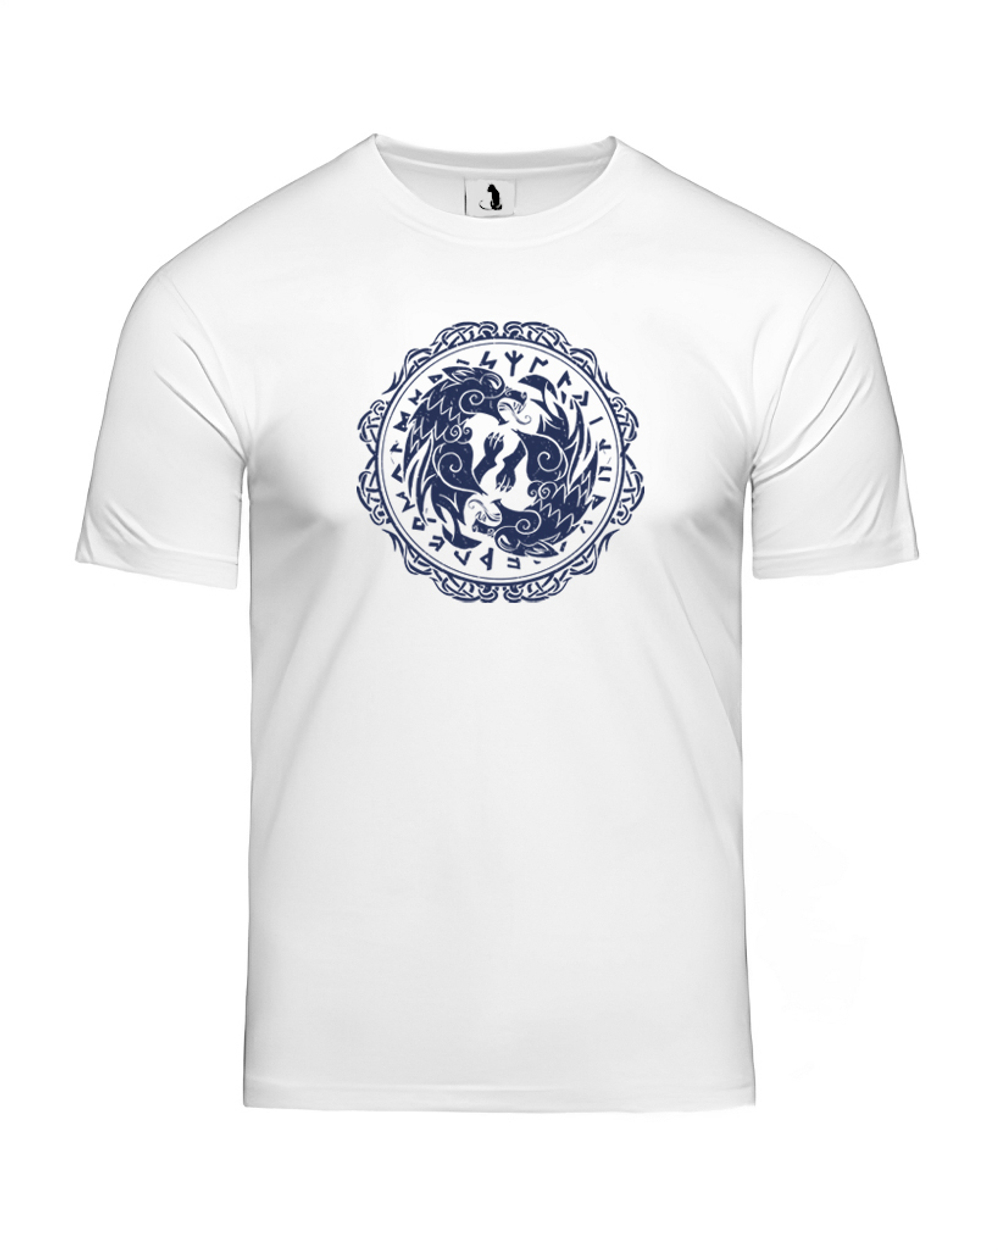 Скандинавская футболка с волком и рунами unisex белая с синим рисунком